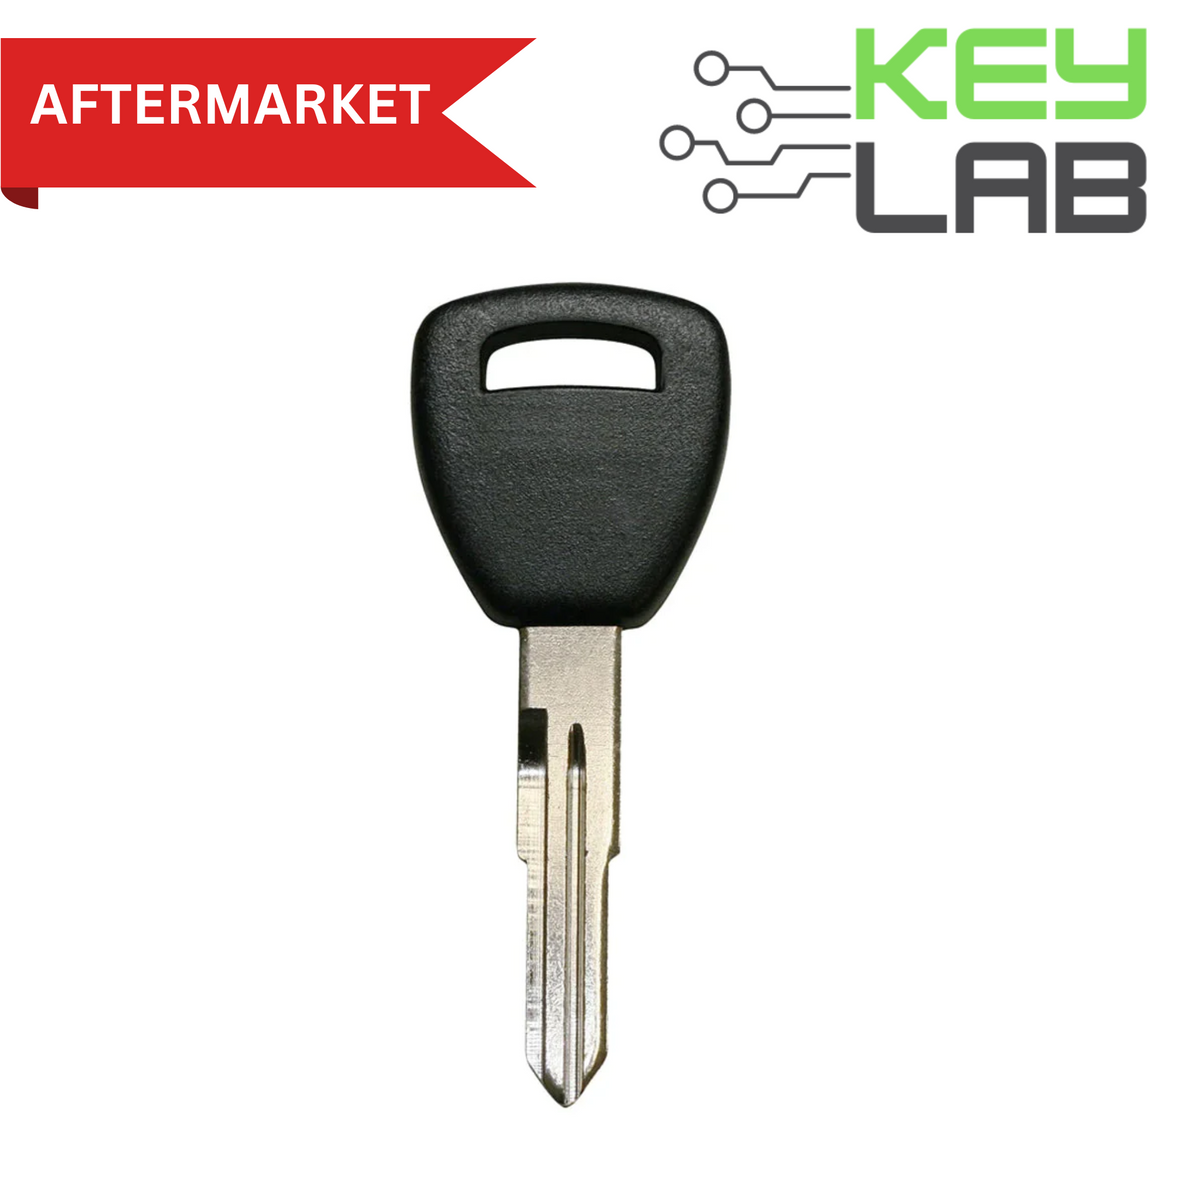 Acura Aftermarket 2004-2008 RSX, TL Transponder Key HD111-PT - Royal Key Supply